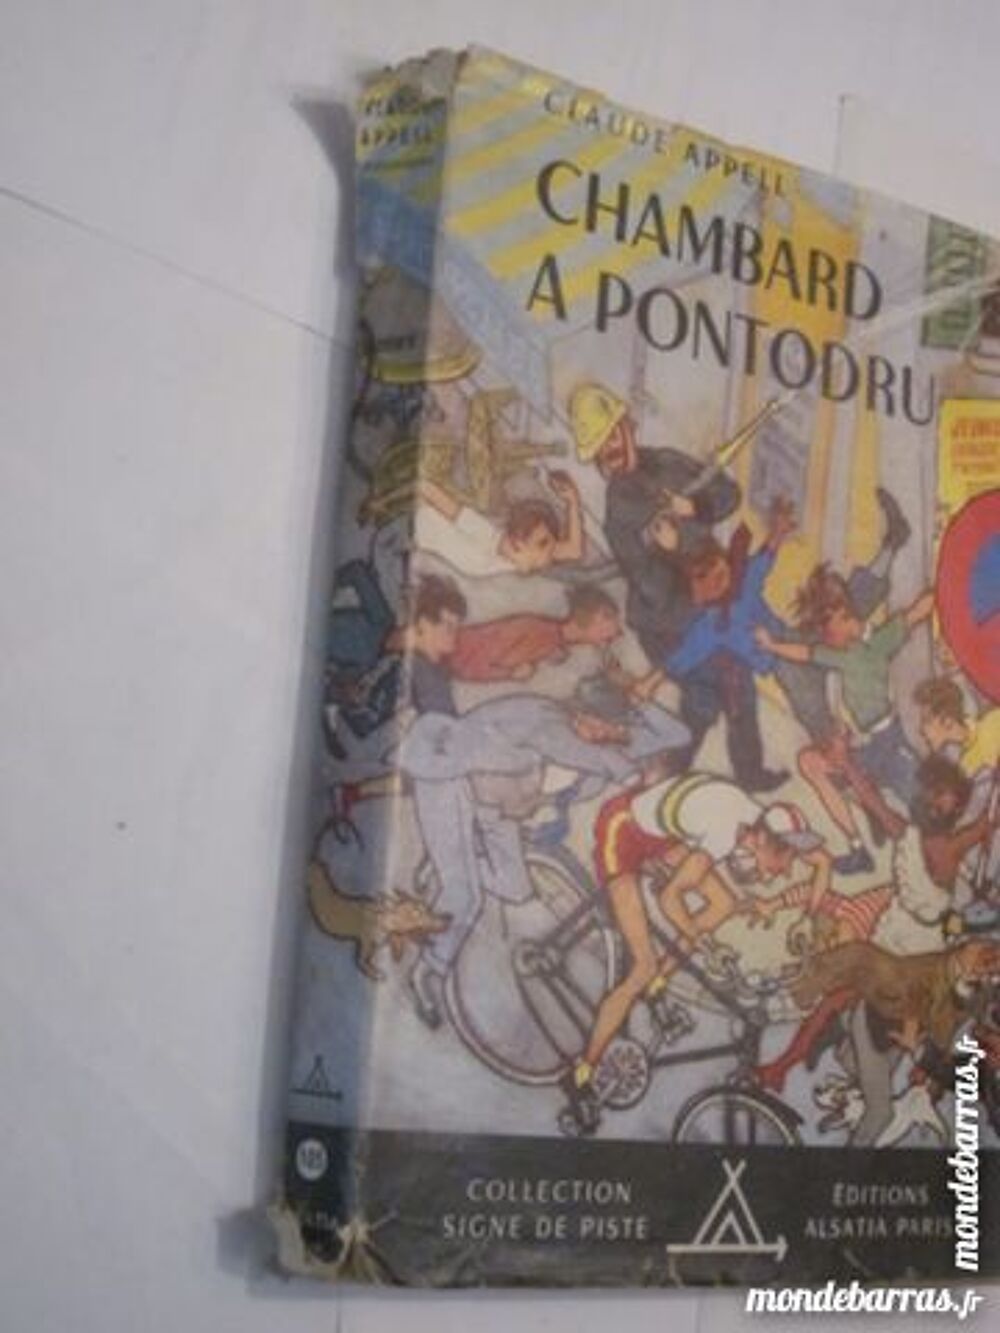 CHAMBARD A PONTODRU collection SIGNE DE PISTE Livres et BD